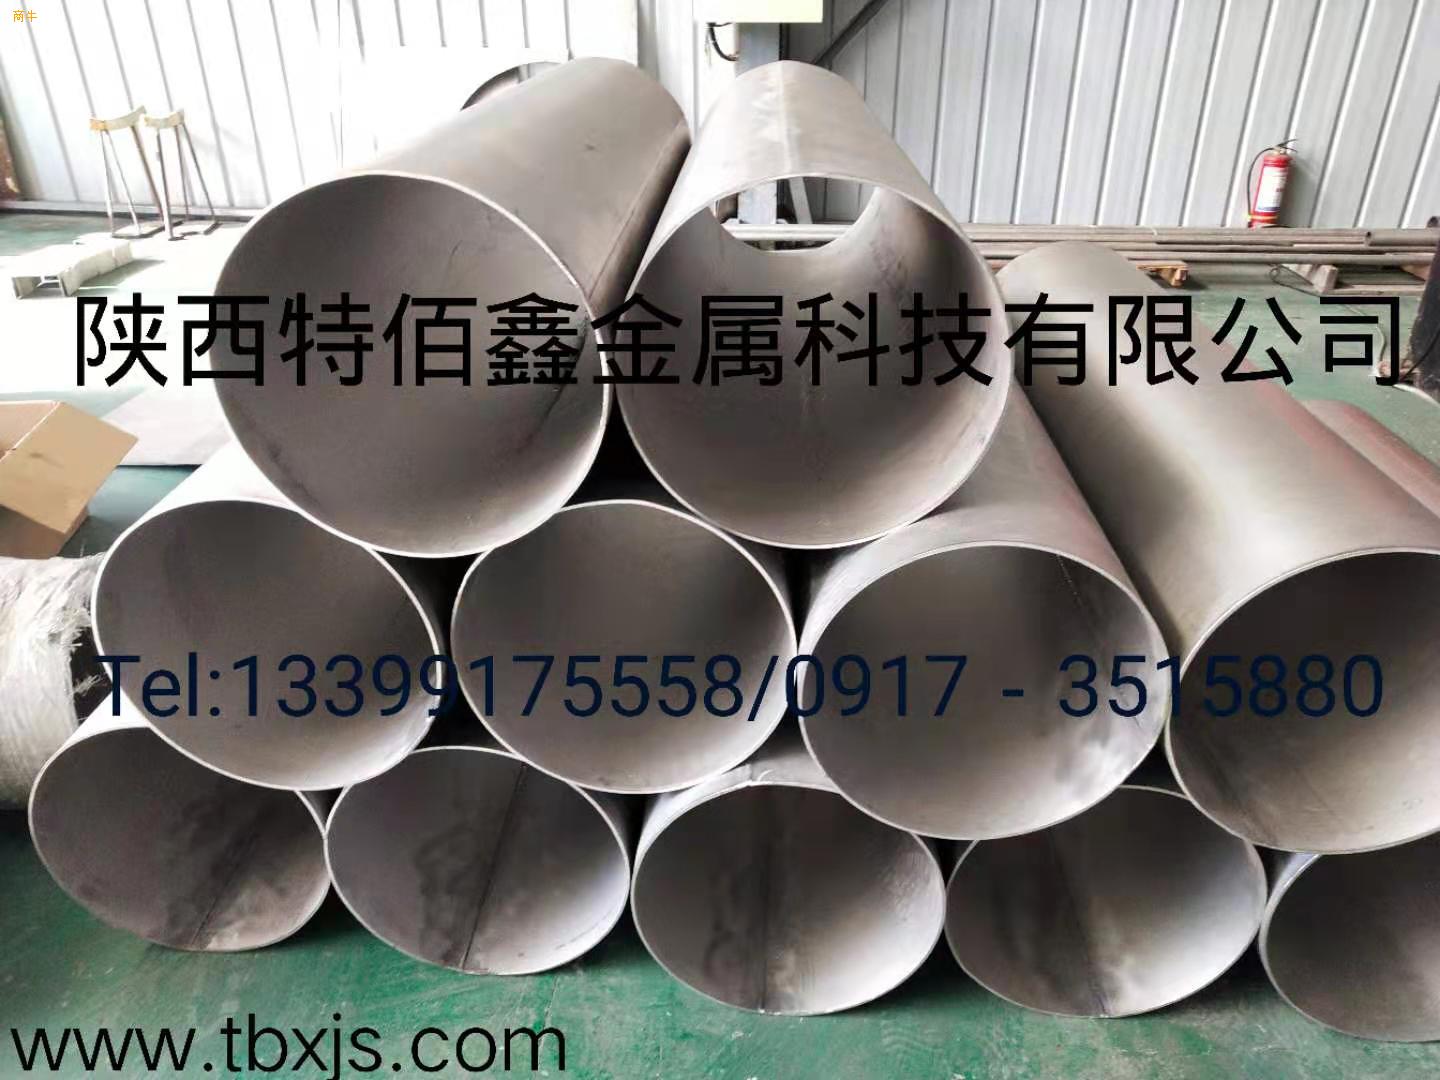 TA1TA2全钛管道纯锆管道定制钛合金管道制造镍管道厂家钛焊管